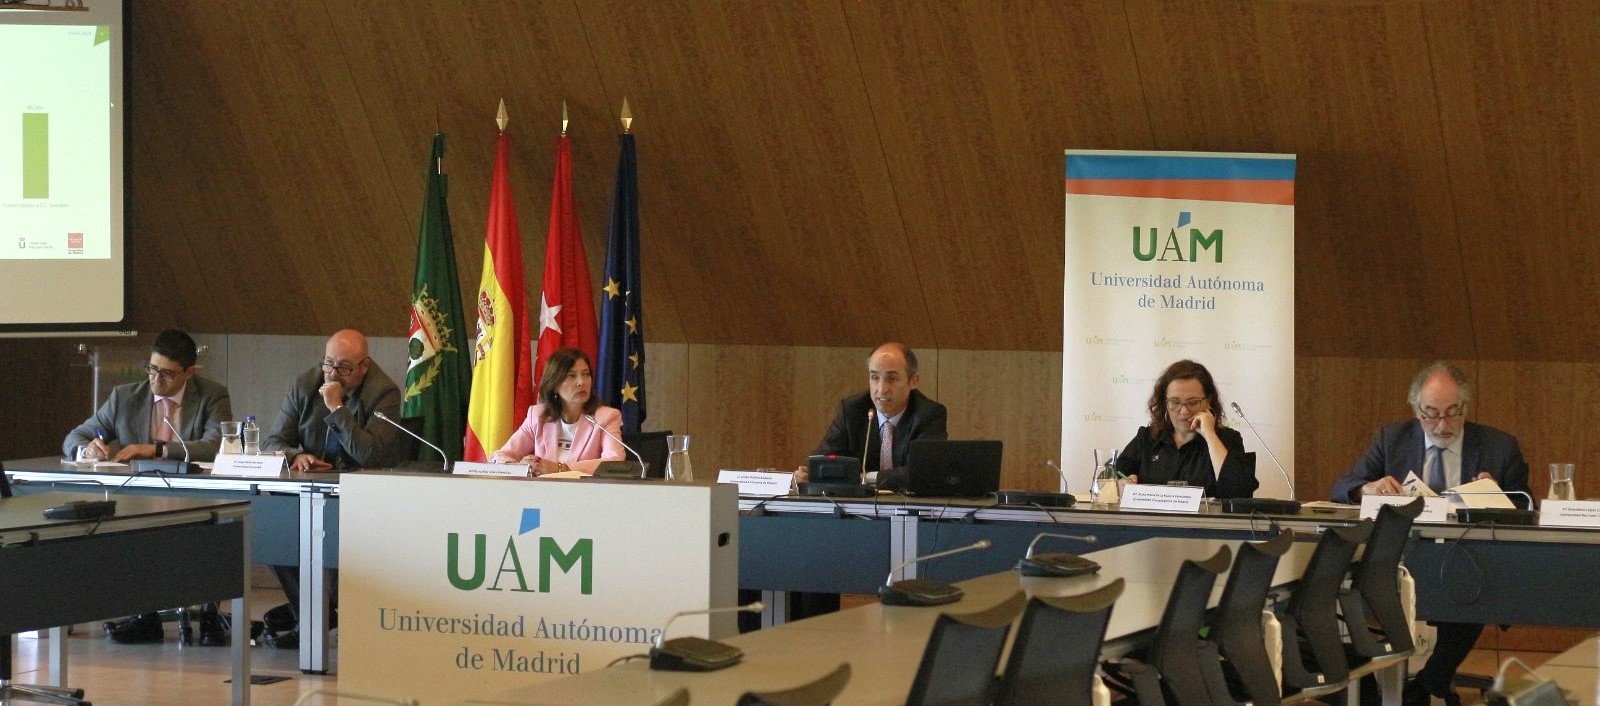 El vicerrector de Estudiantes y Empleabilidad de la UAM, Javier Oubiña, en el centro, durante la rueda de prensa. Le acompañan representantes de las universidades públicas y de la Comunidad de Madrid. / UAM